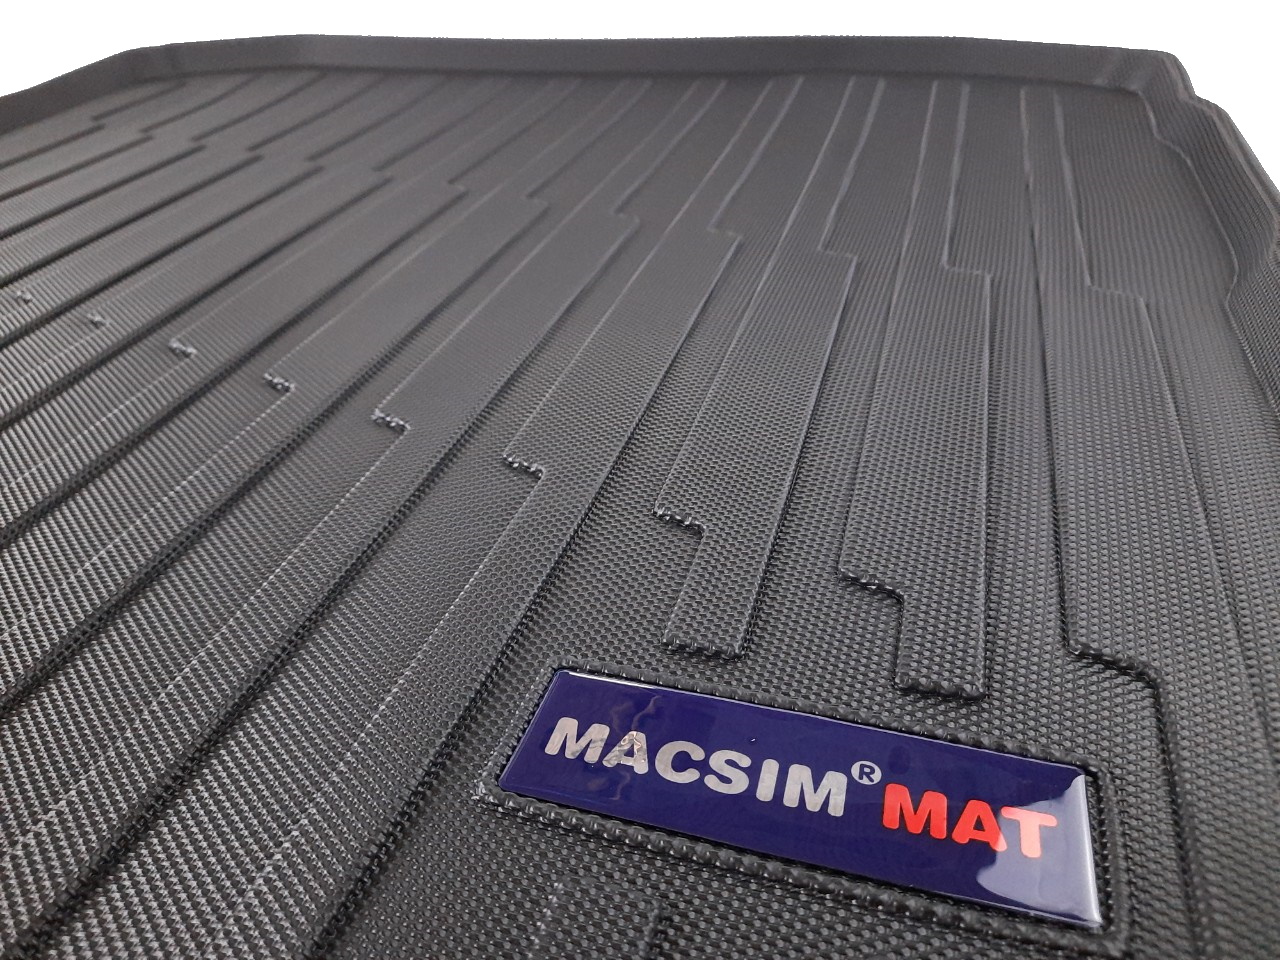 Thảm lót cốp xe ô tô Audi A3 2020 nhãn hiệu Macsim chất liệu TPV màu đen.